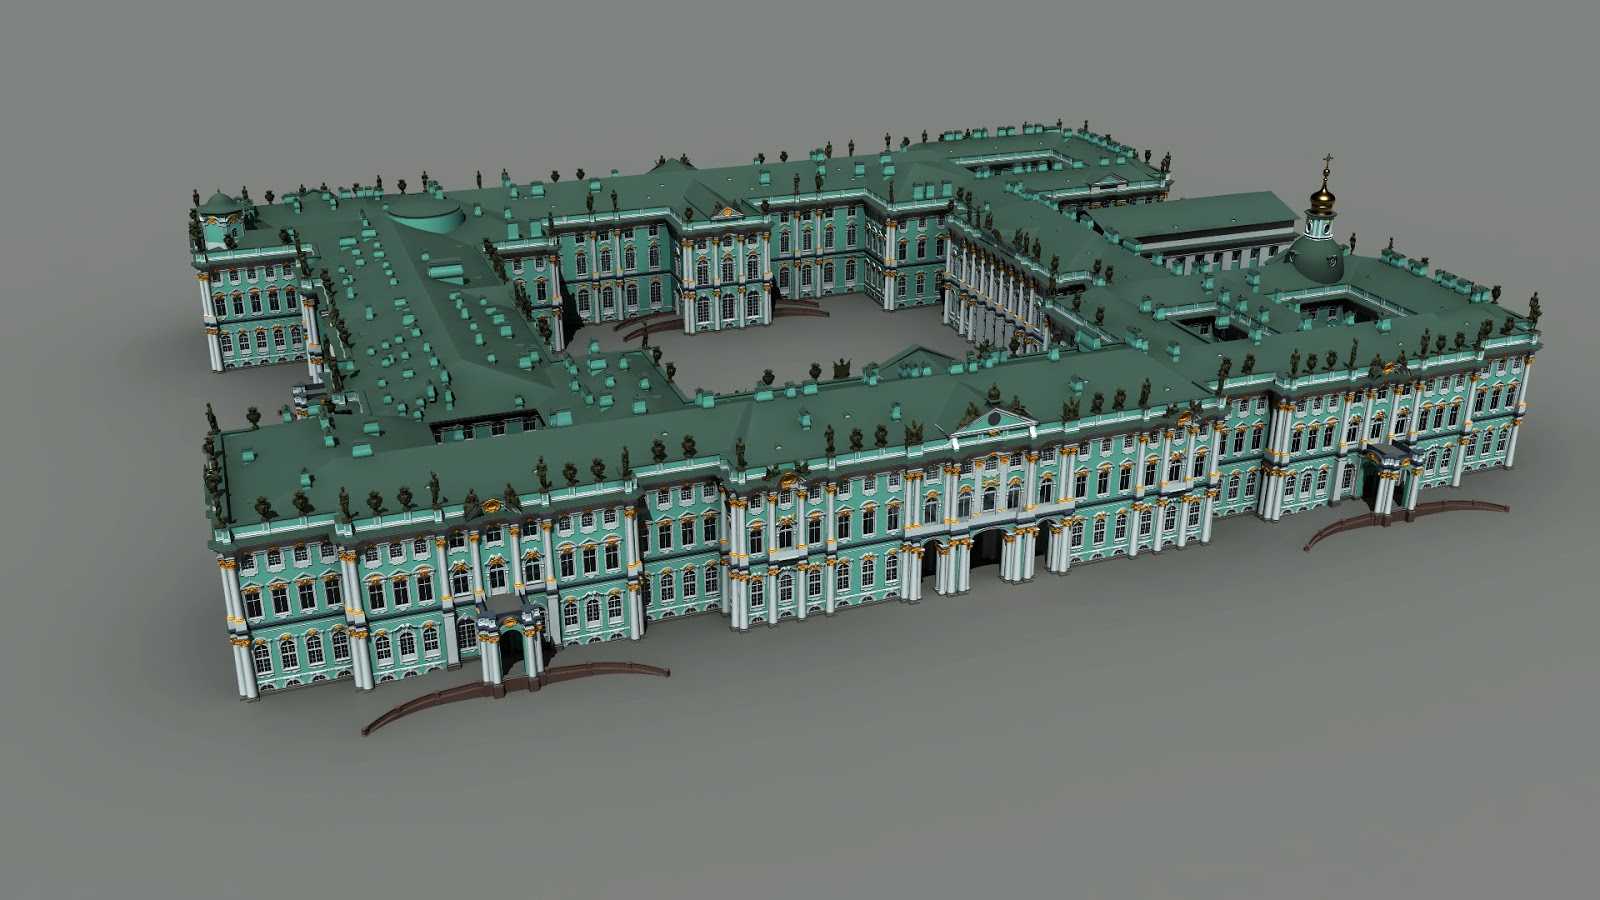 Зимний дворец в санкт-петербурге: история, главные помещения, что посмотреть